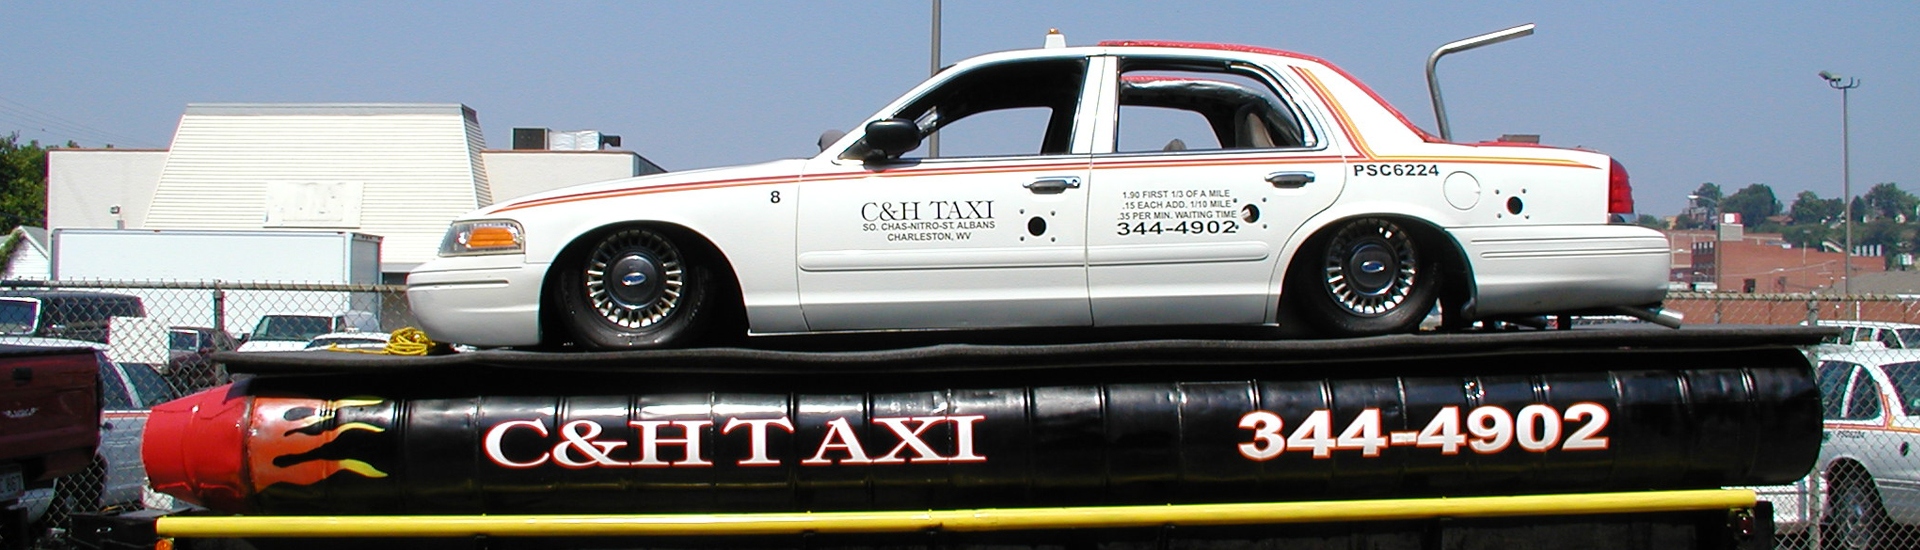 C&H Taxi Cab